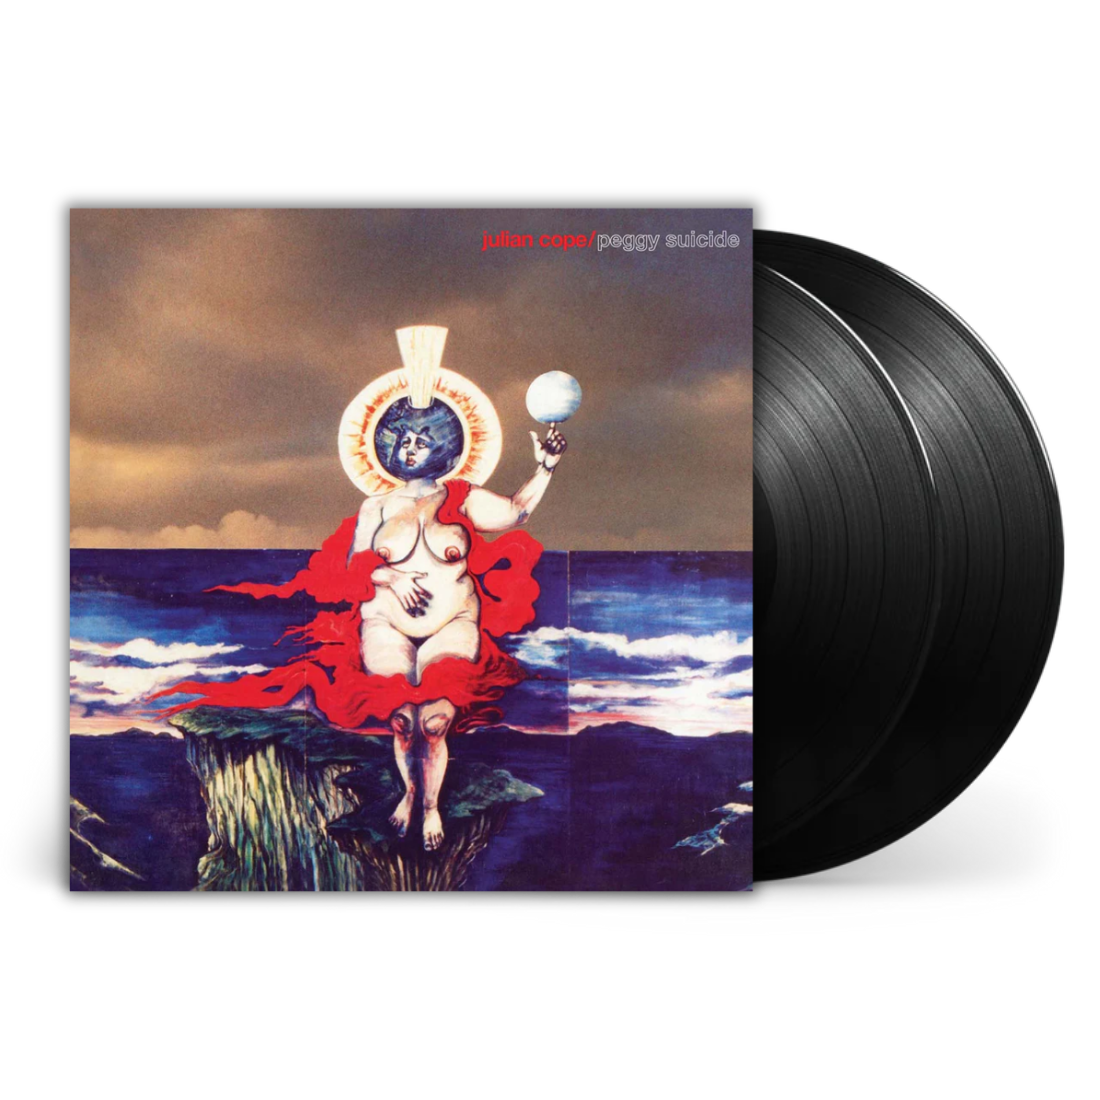 Julian Cope - Peggy Suicide: Vinyl 2LP